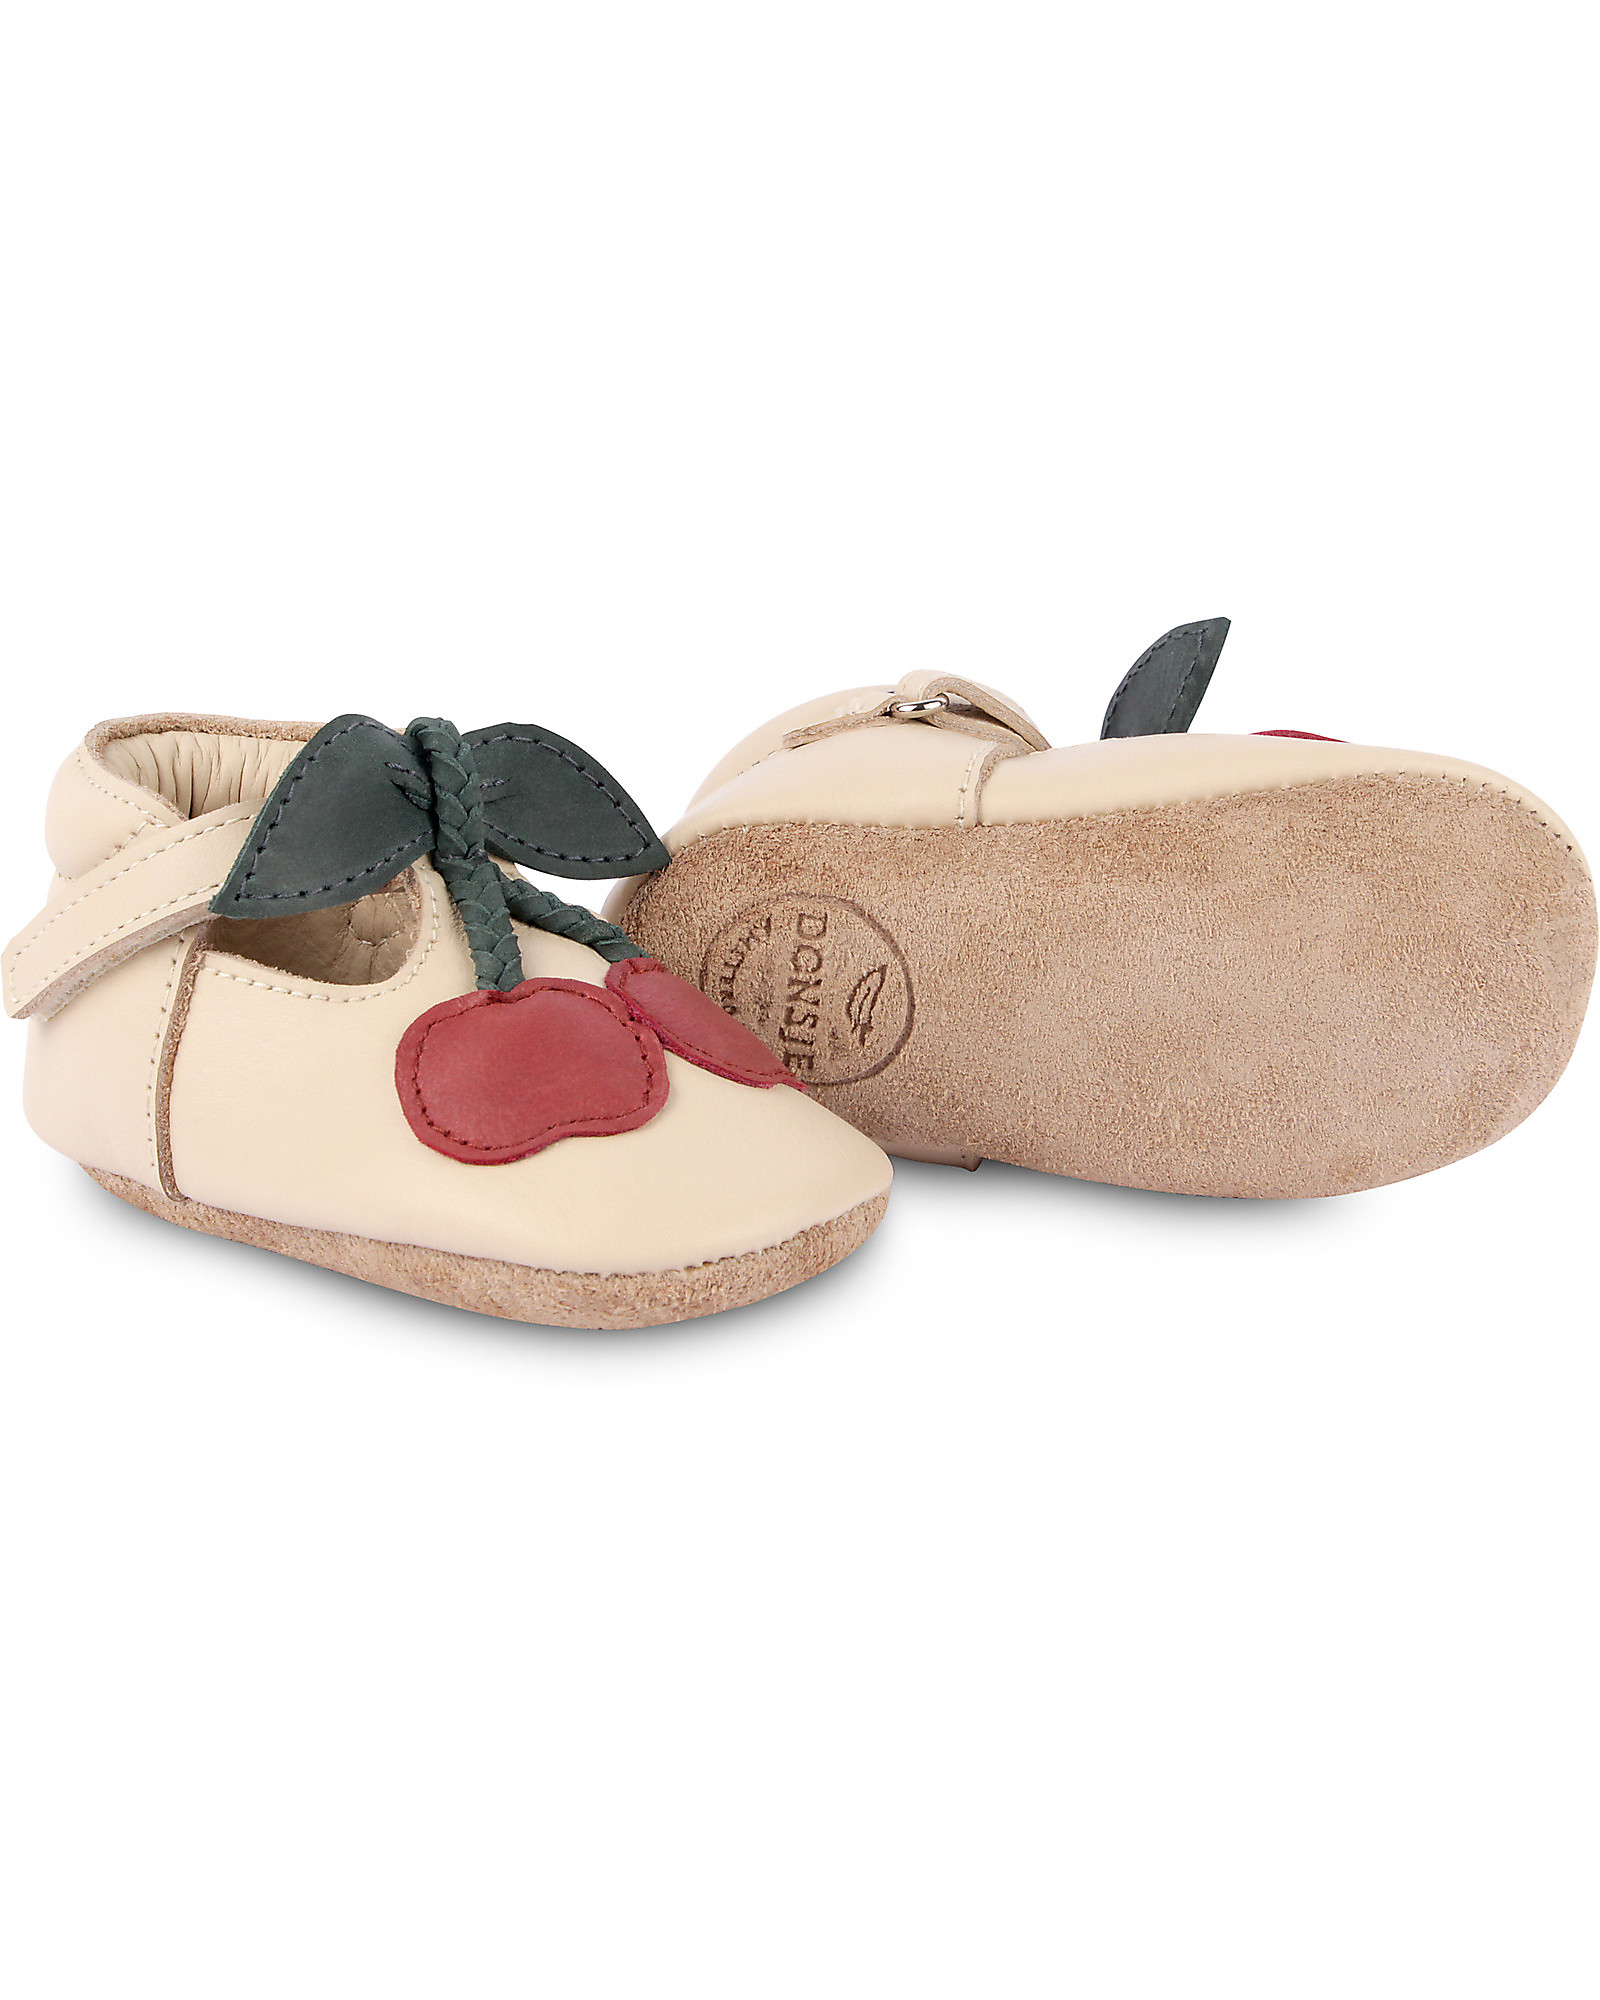 Donsje OUTLET - Nanoe Leather Baby Shoe - Cherry - Velcro